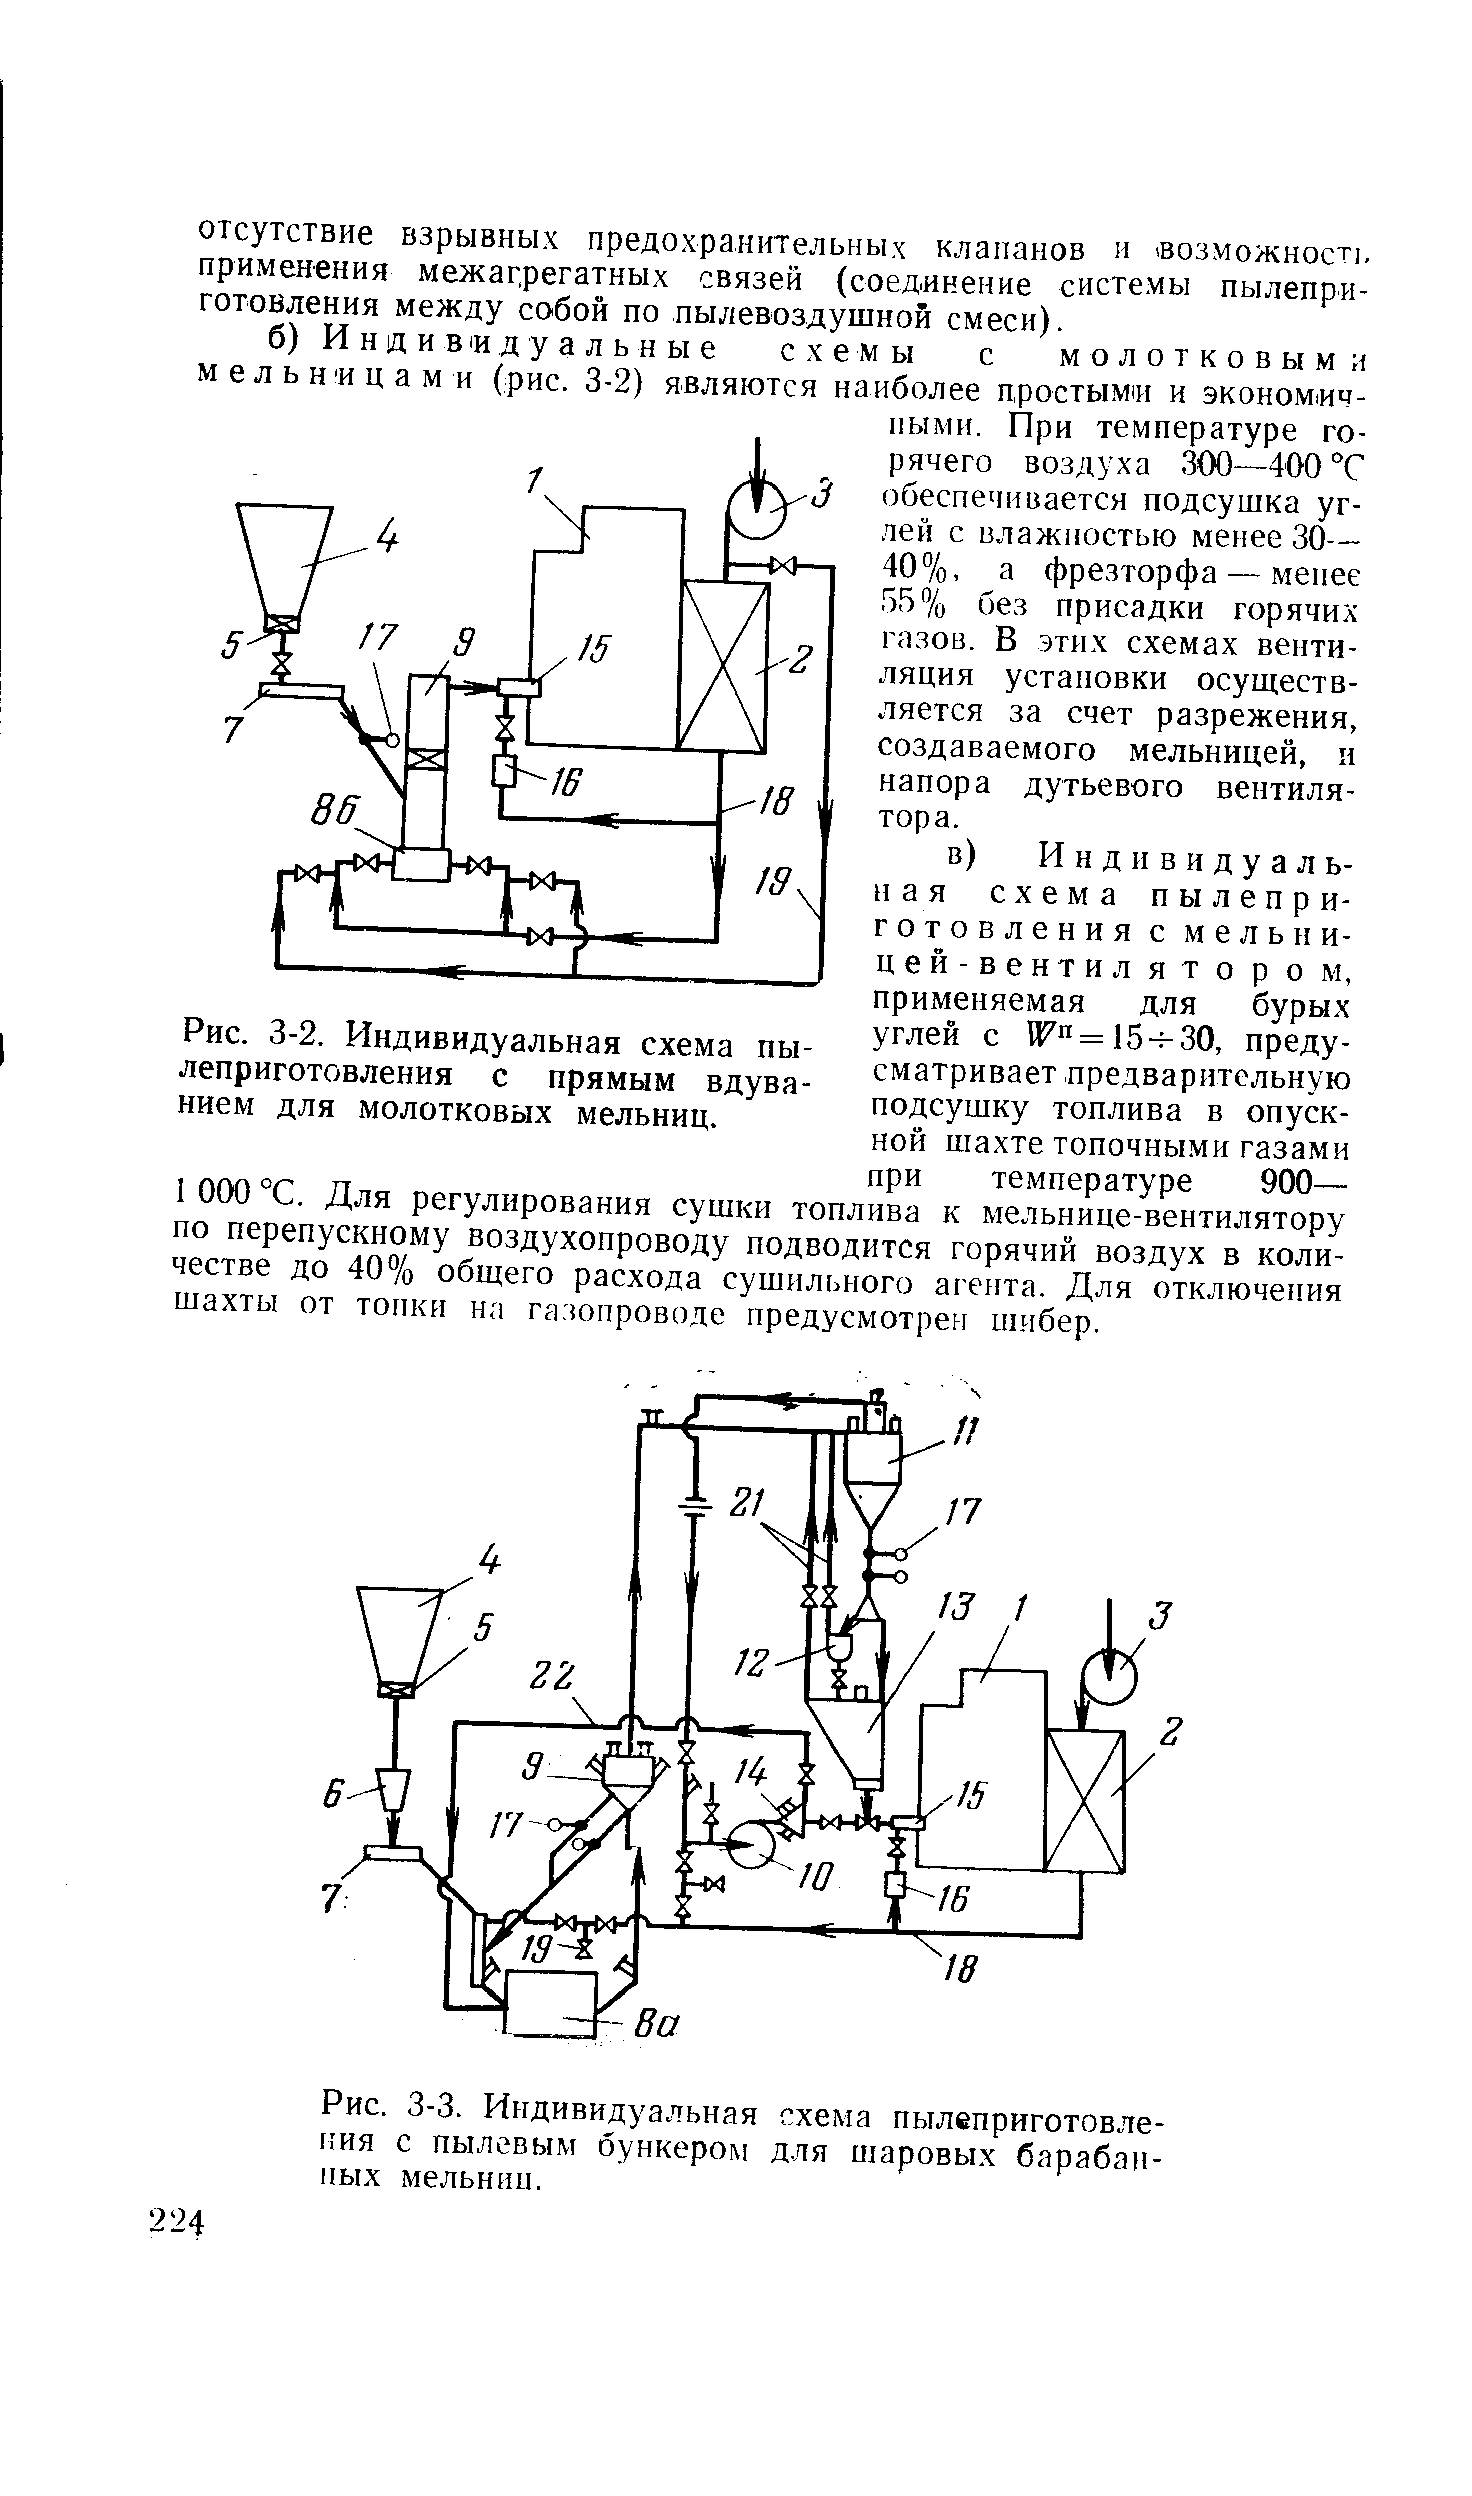 Рис. 3-2. Индивидуальная схема пылеприготовления с прямым вдуванием для молотковых мельниц.
